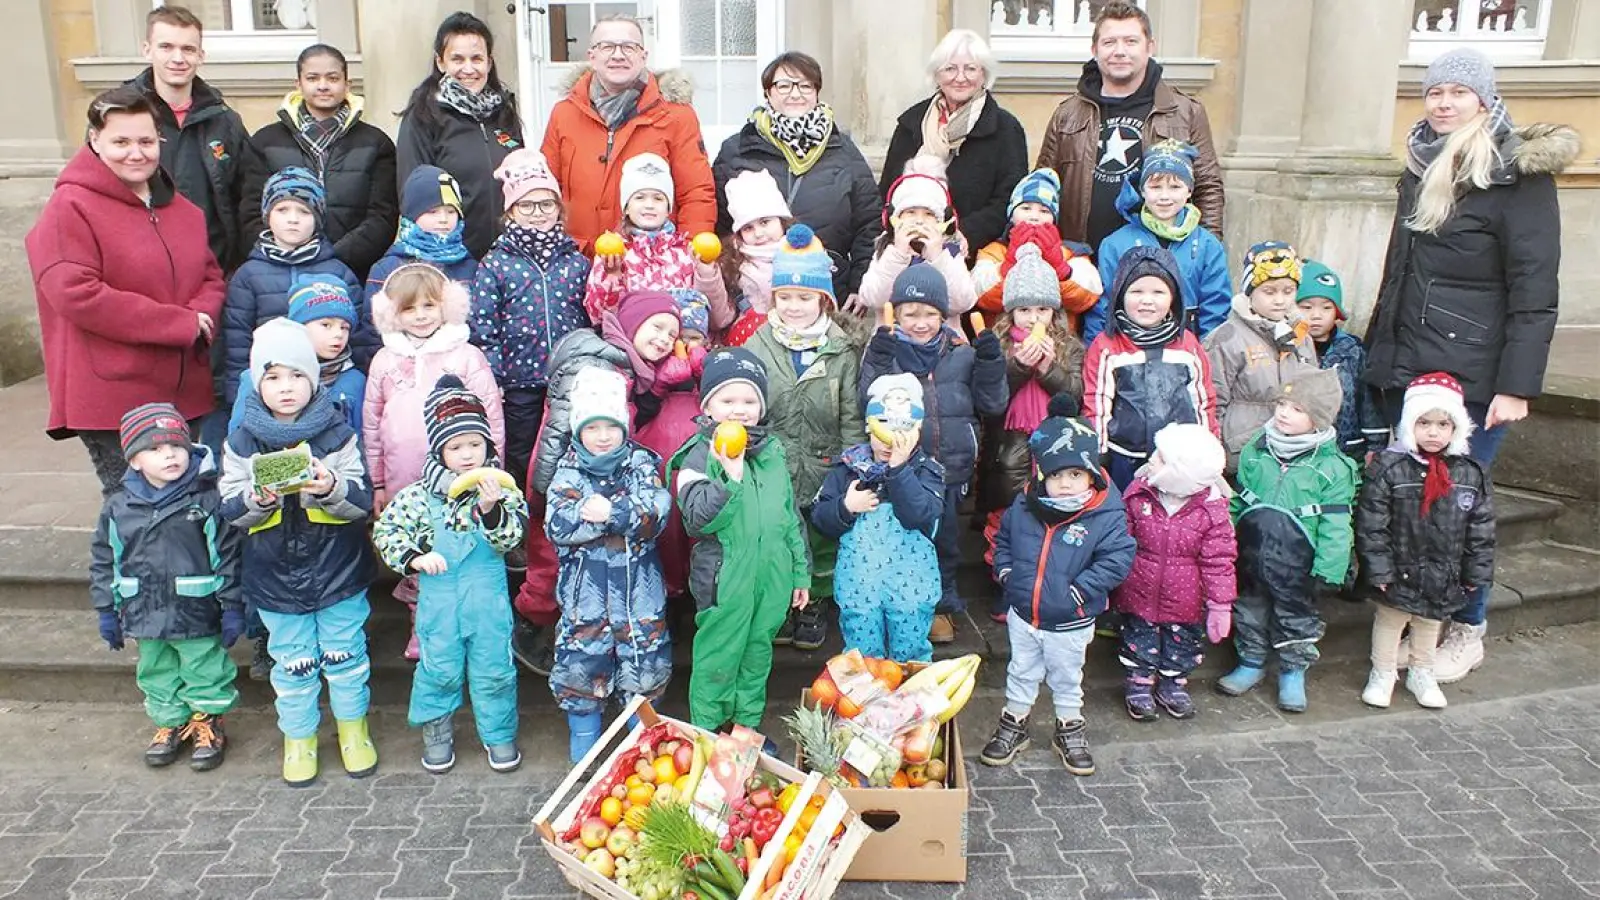 Vitaminkistenaktion Wir helfen in Bayreuth Kindergarten St. Vinzenz (Foto: Roland Schmidt)